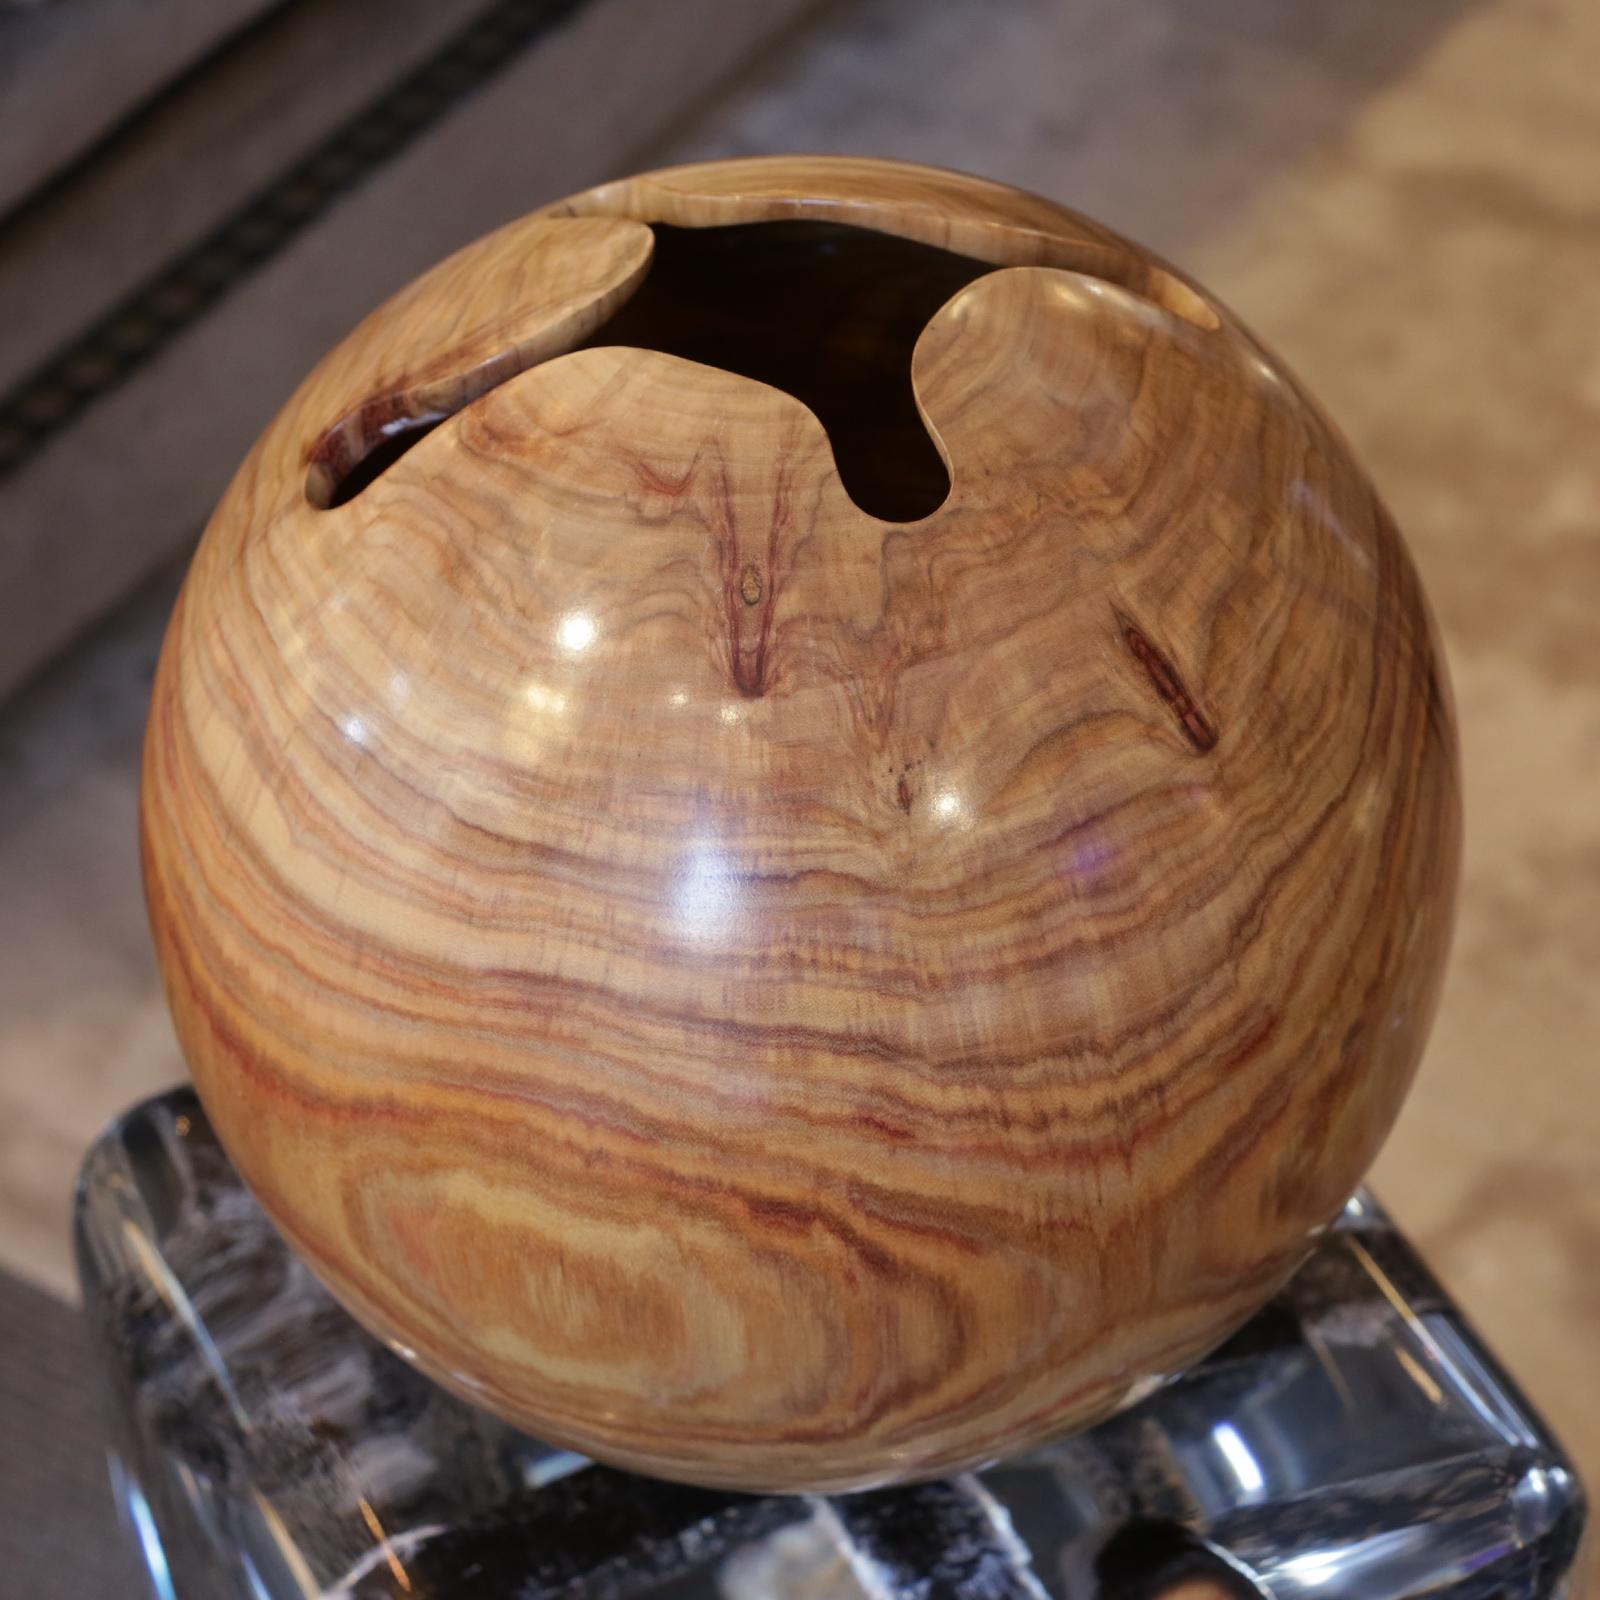 Sculpture Tarara Amaria ball
en bois massif de Tarara Amaria (Brésil),
Parfaitement sculpté en forme de sphère
et polie. Pièce exceptionnelle.
Mesures : Diamètre 28 cm x hauteur 28cm.